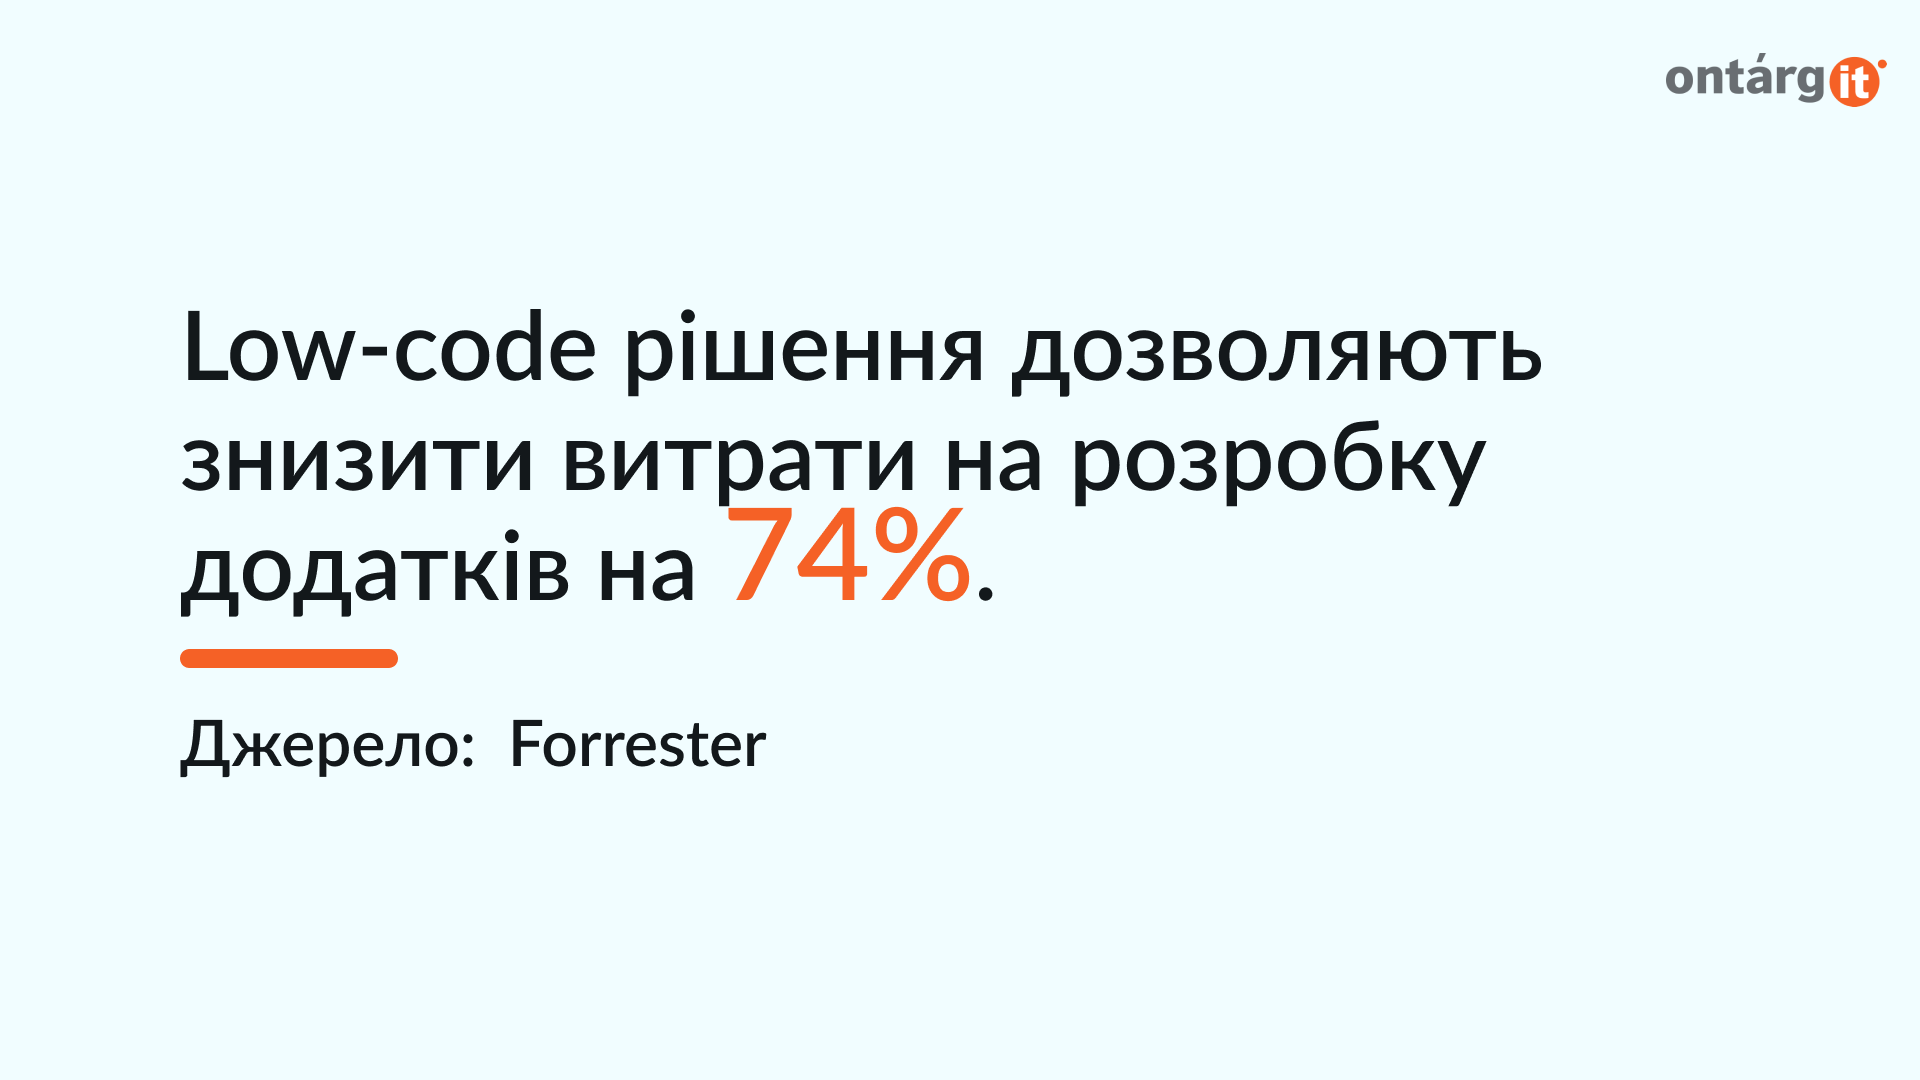 Low-code рішення дозволяють знизити витрати на розробку додатків на 74%.